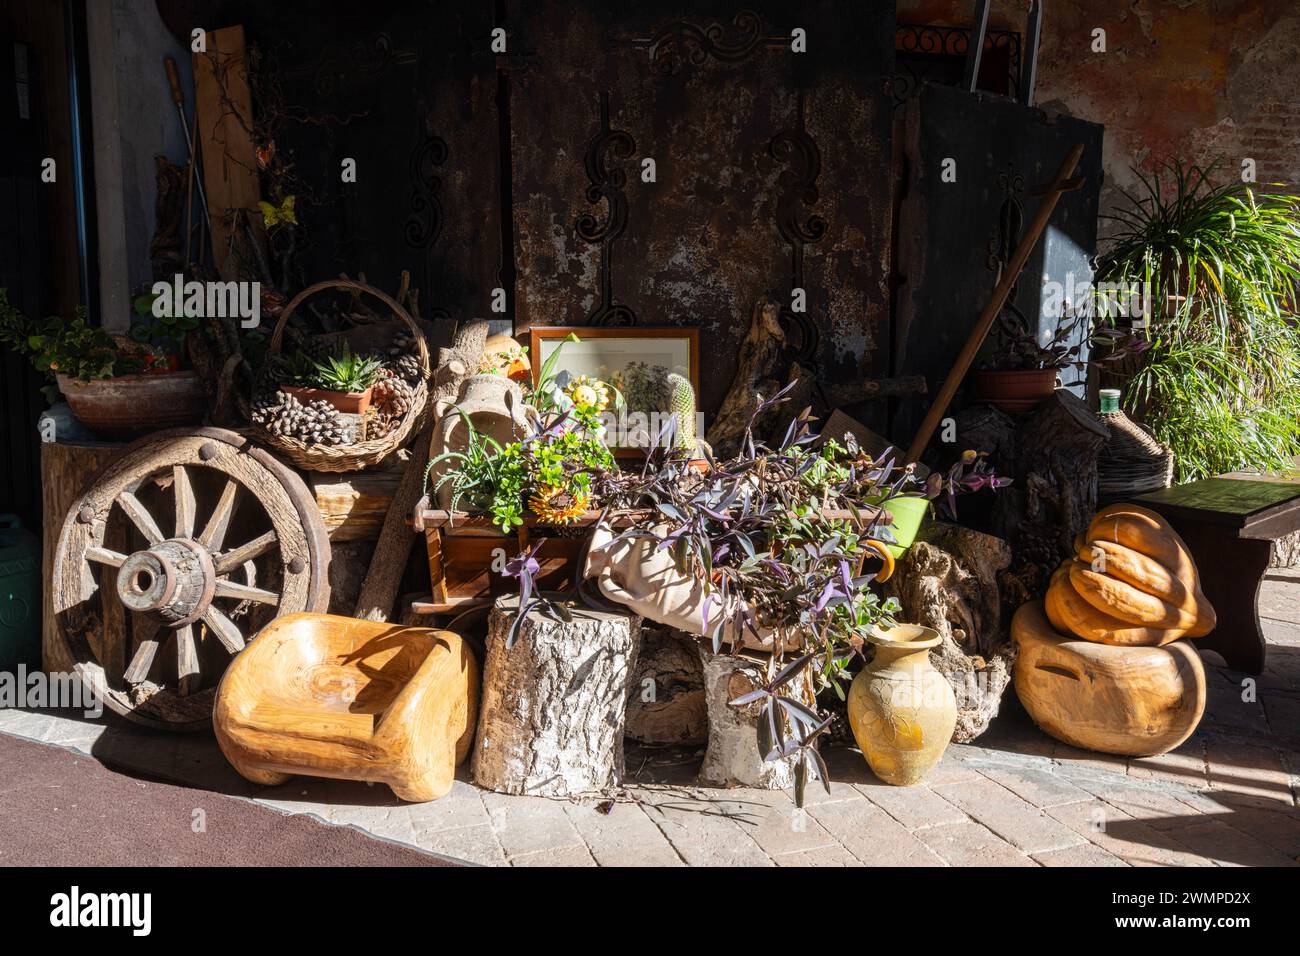 Objets anciens et plantes recueillis à l'extérieur d'une cour d'une ancienne maison rurale dans le nord de l'Italie Banque D'Images